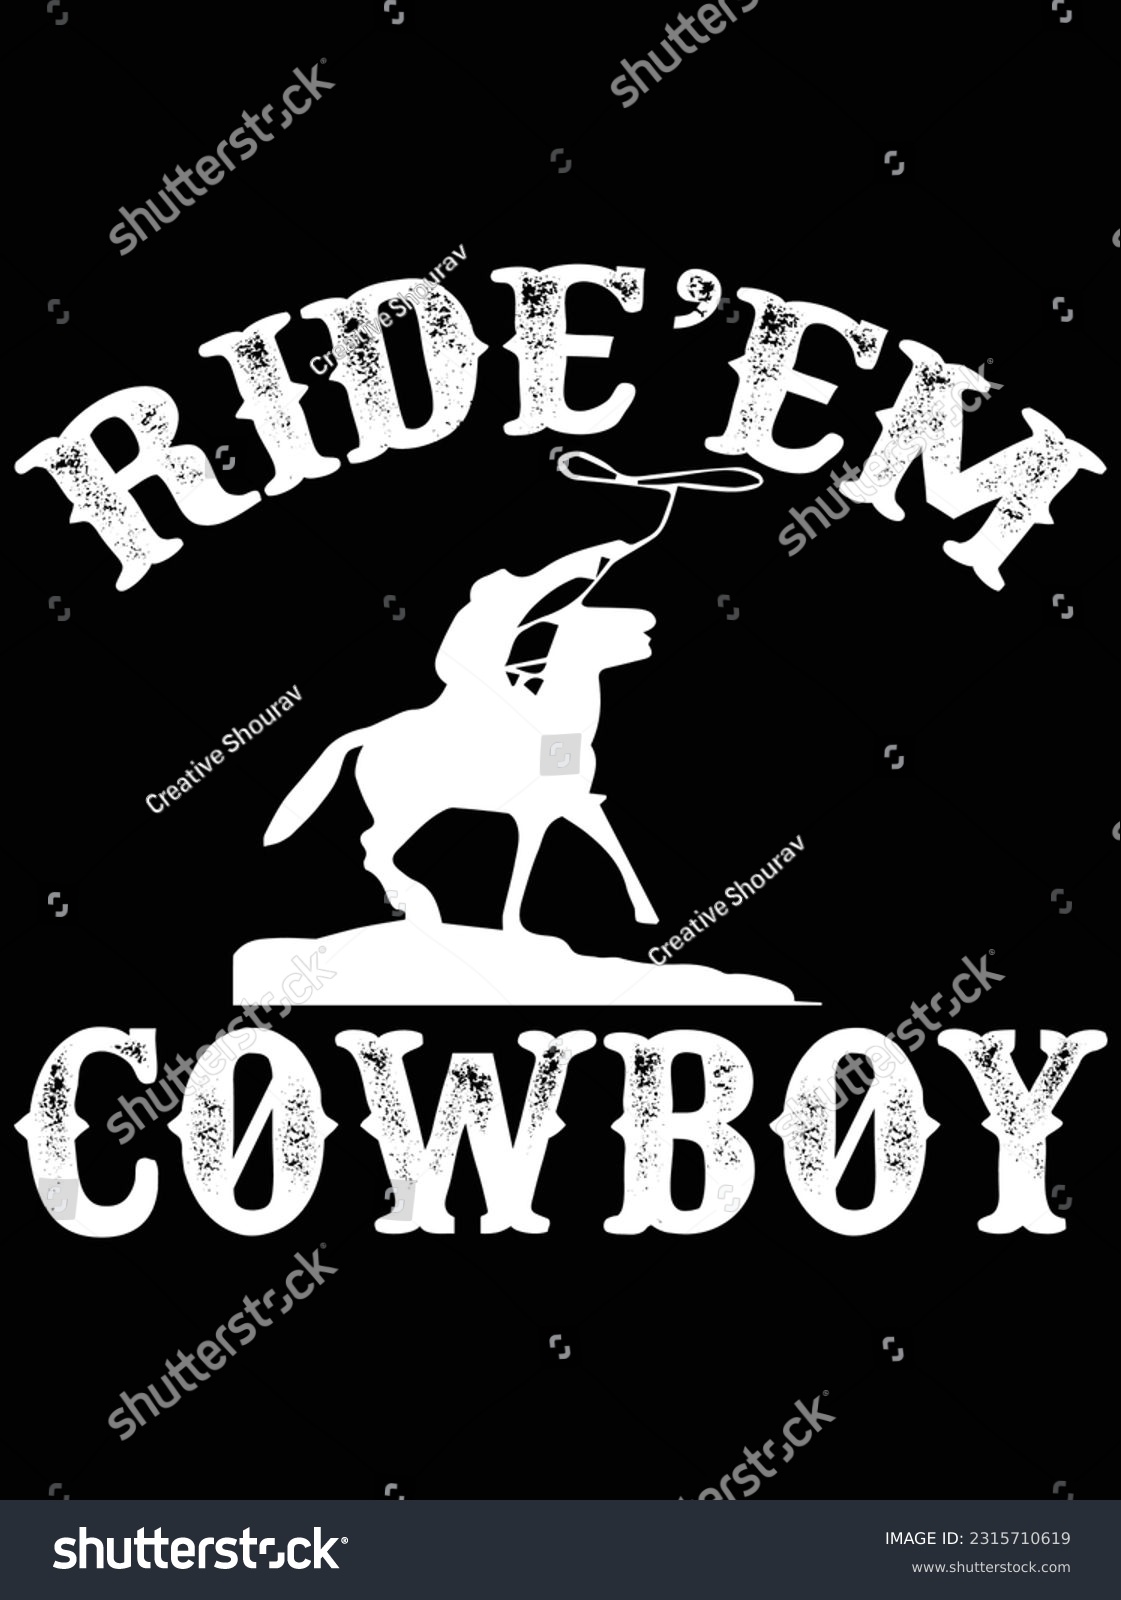 SVG of Ride'em cowboy vector art design, eps file. design file for t-shirt. SVG, EPS cuttable design file svg